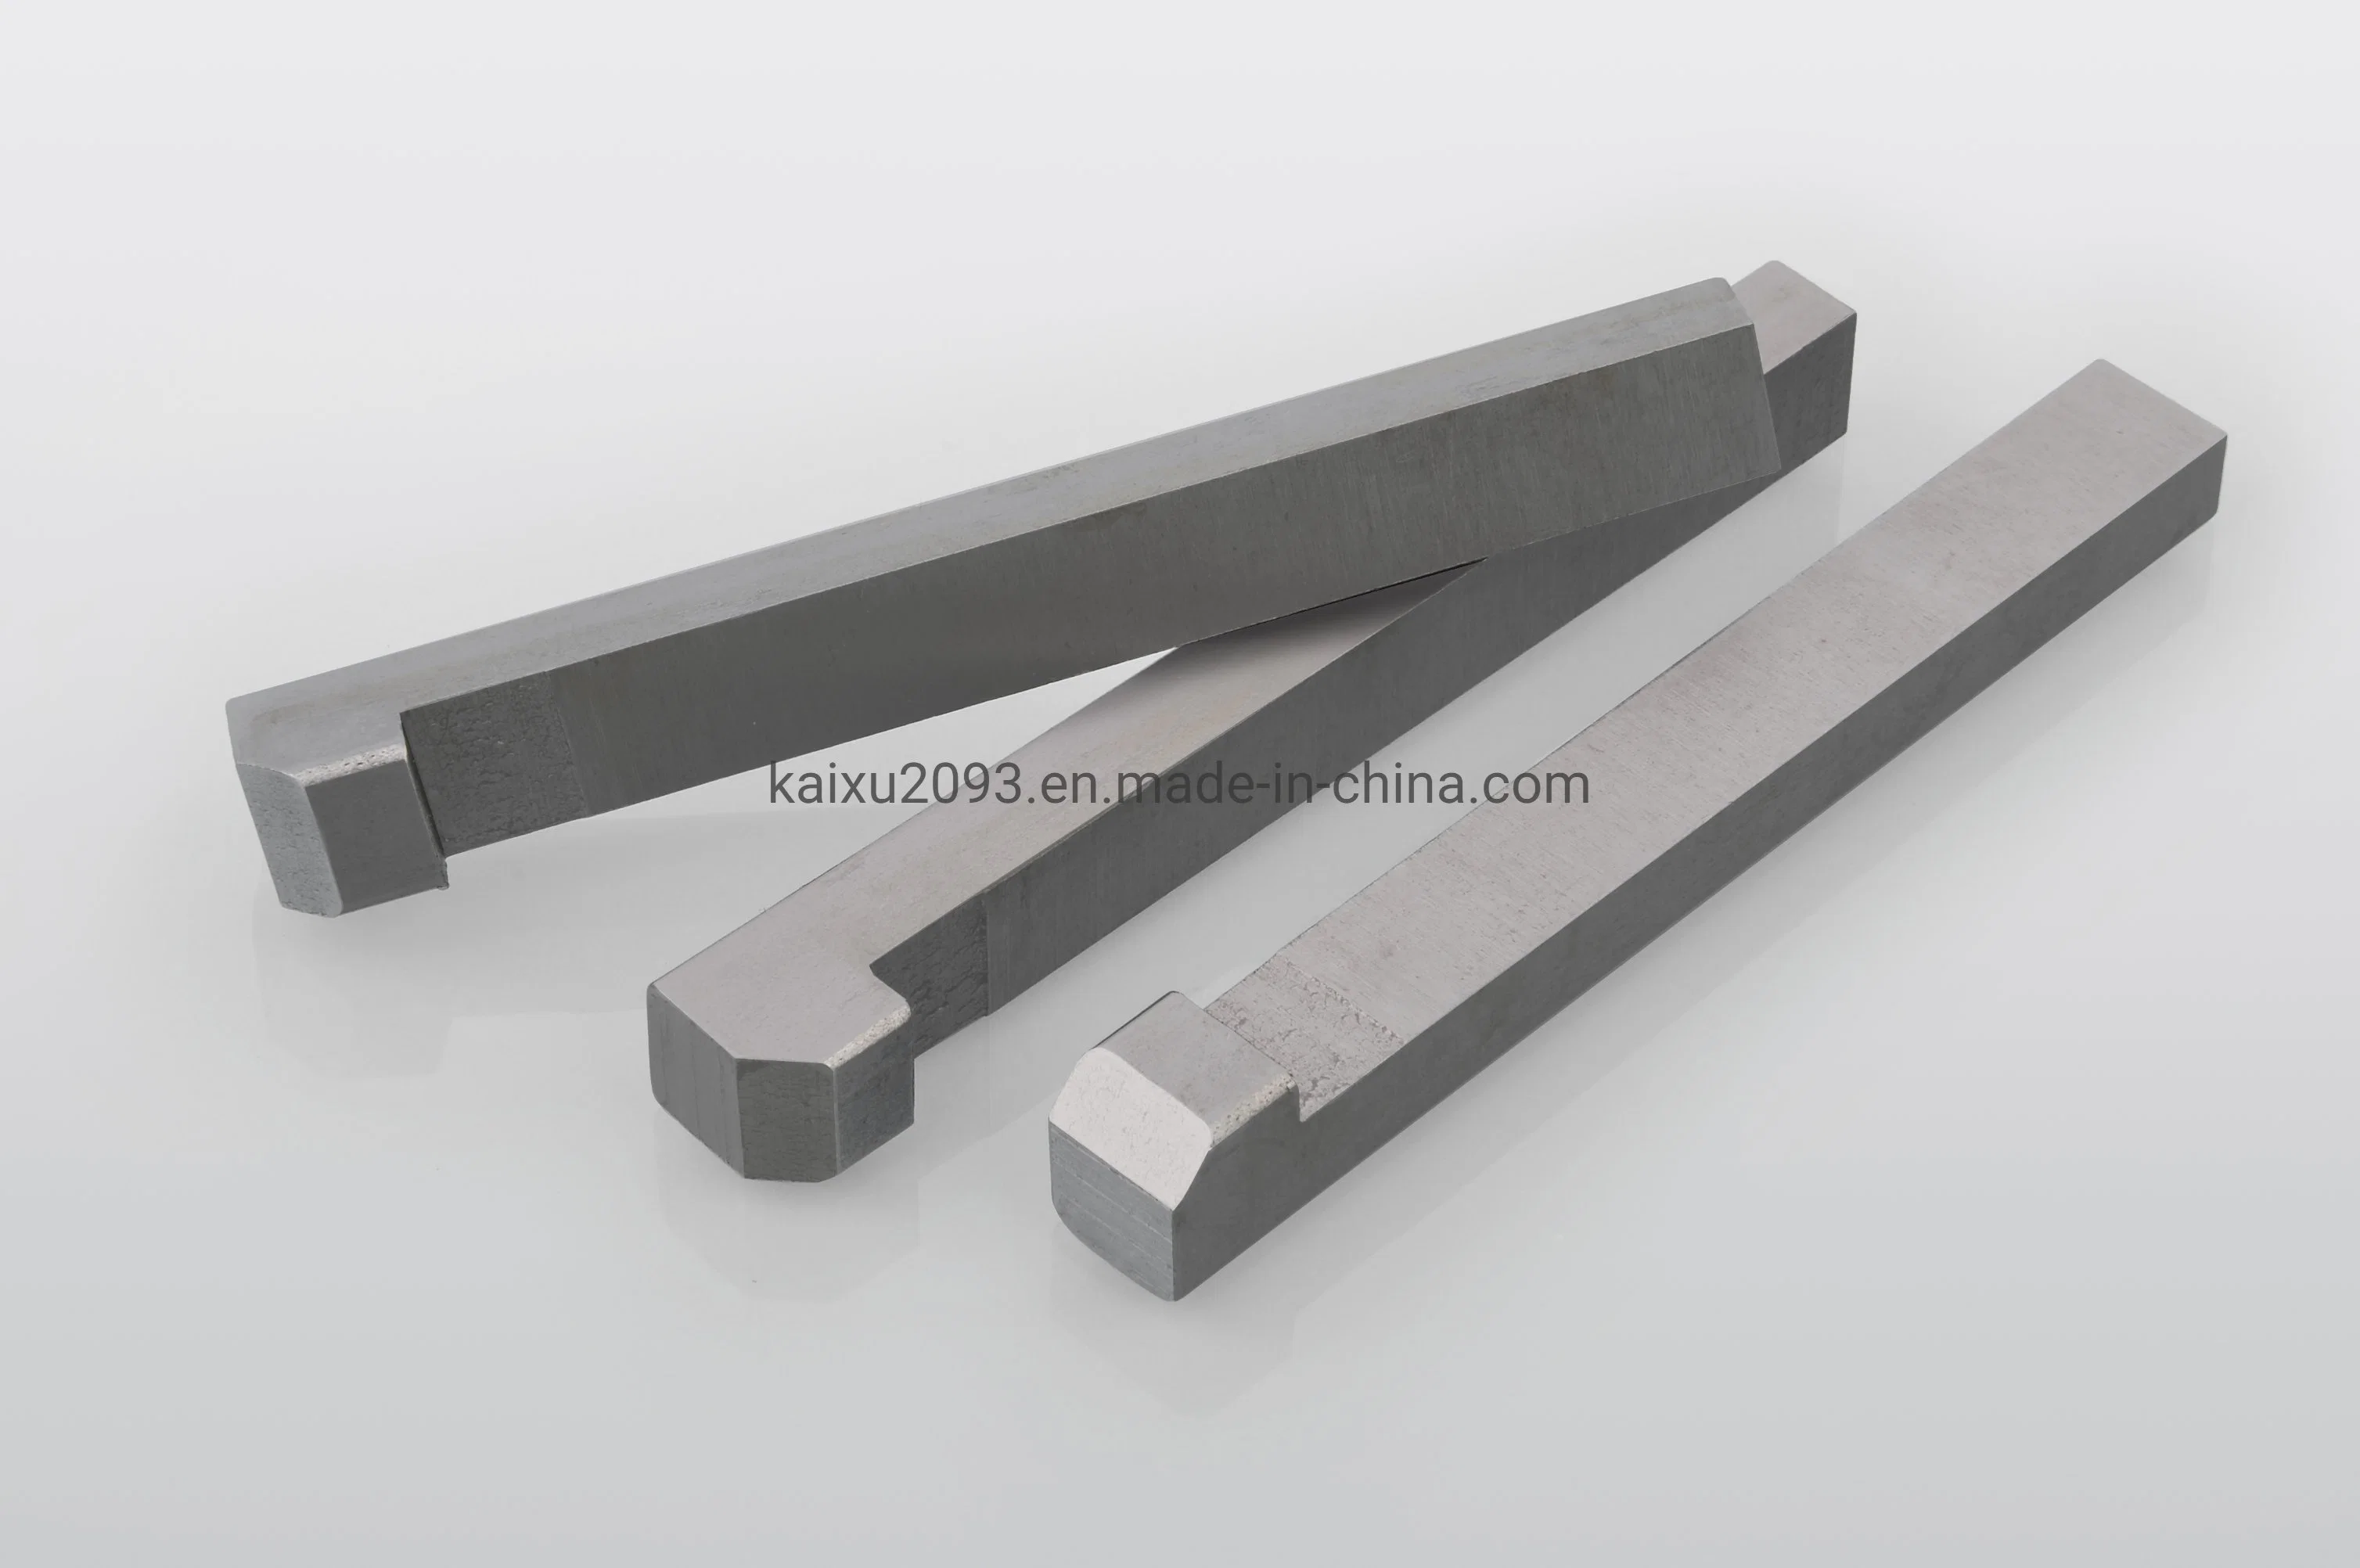 الصين تصنع المفتاح المتوازي من الفولاذ المقاوم للصدأ SS304 SS316 مفاتيح مسطحة